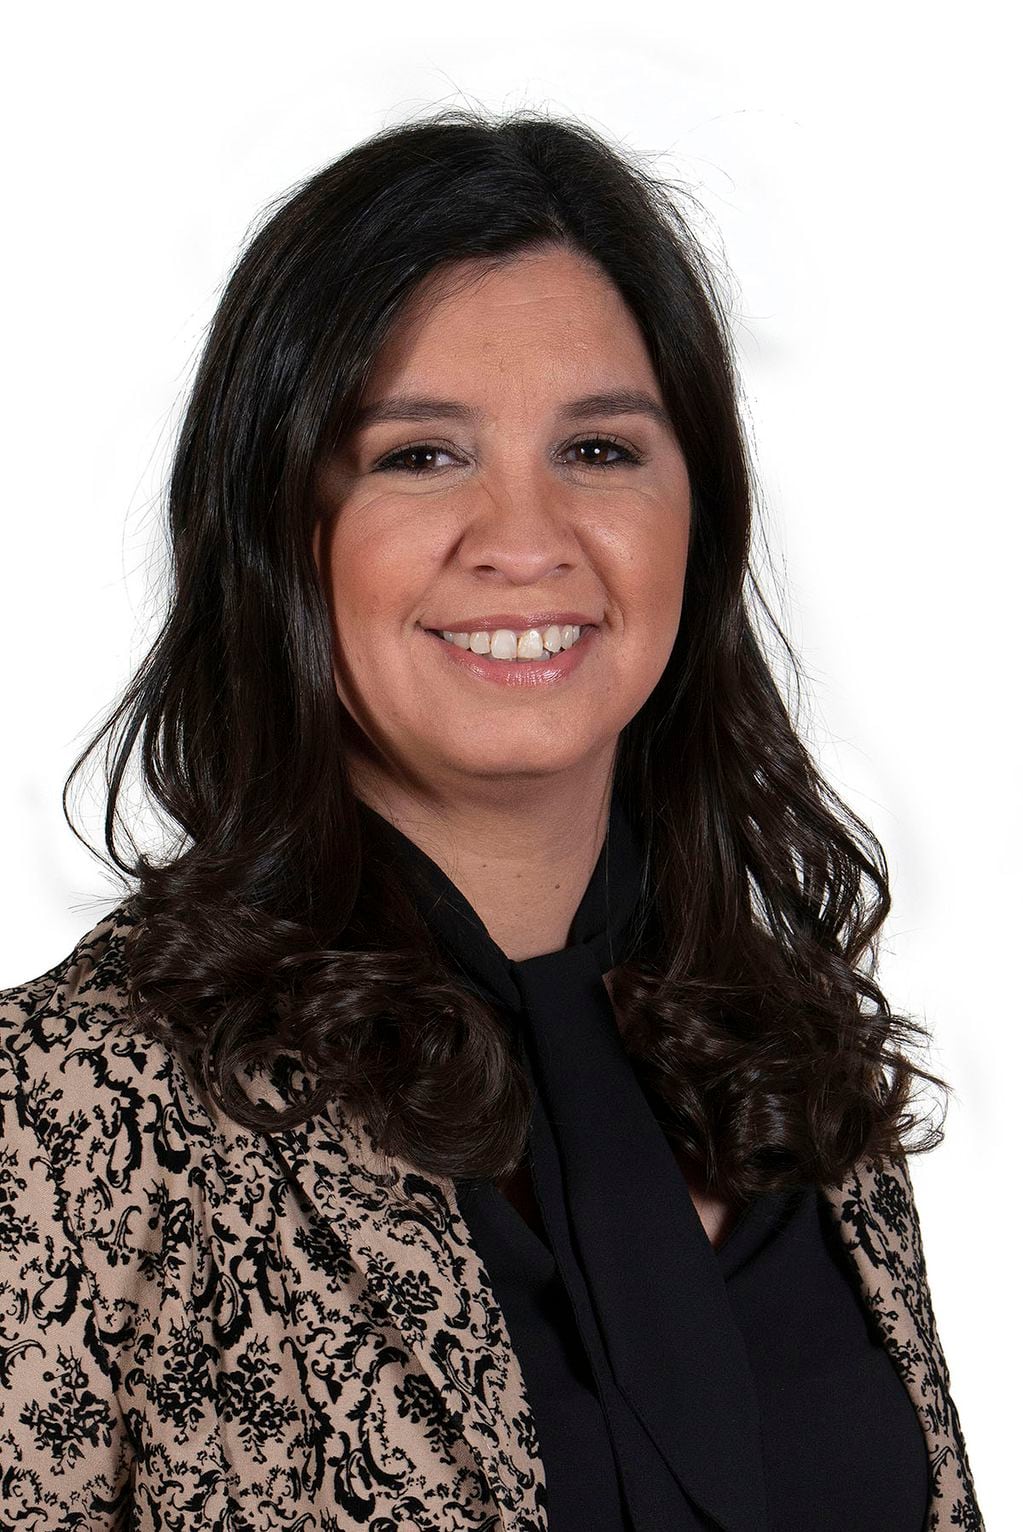 Carolina Lencinas, diputada provincial desde el año pasado. Fue concejal de La Paz.
